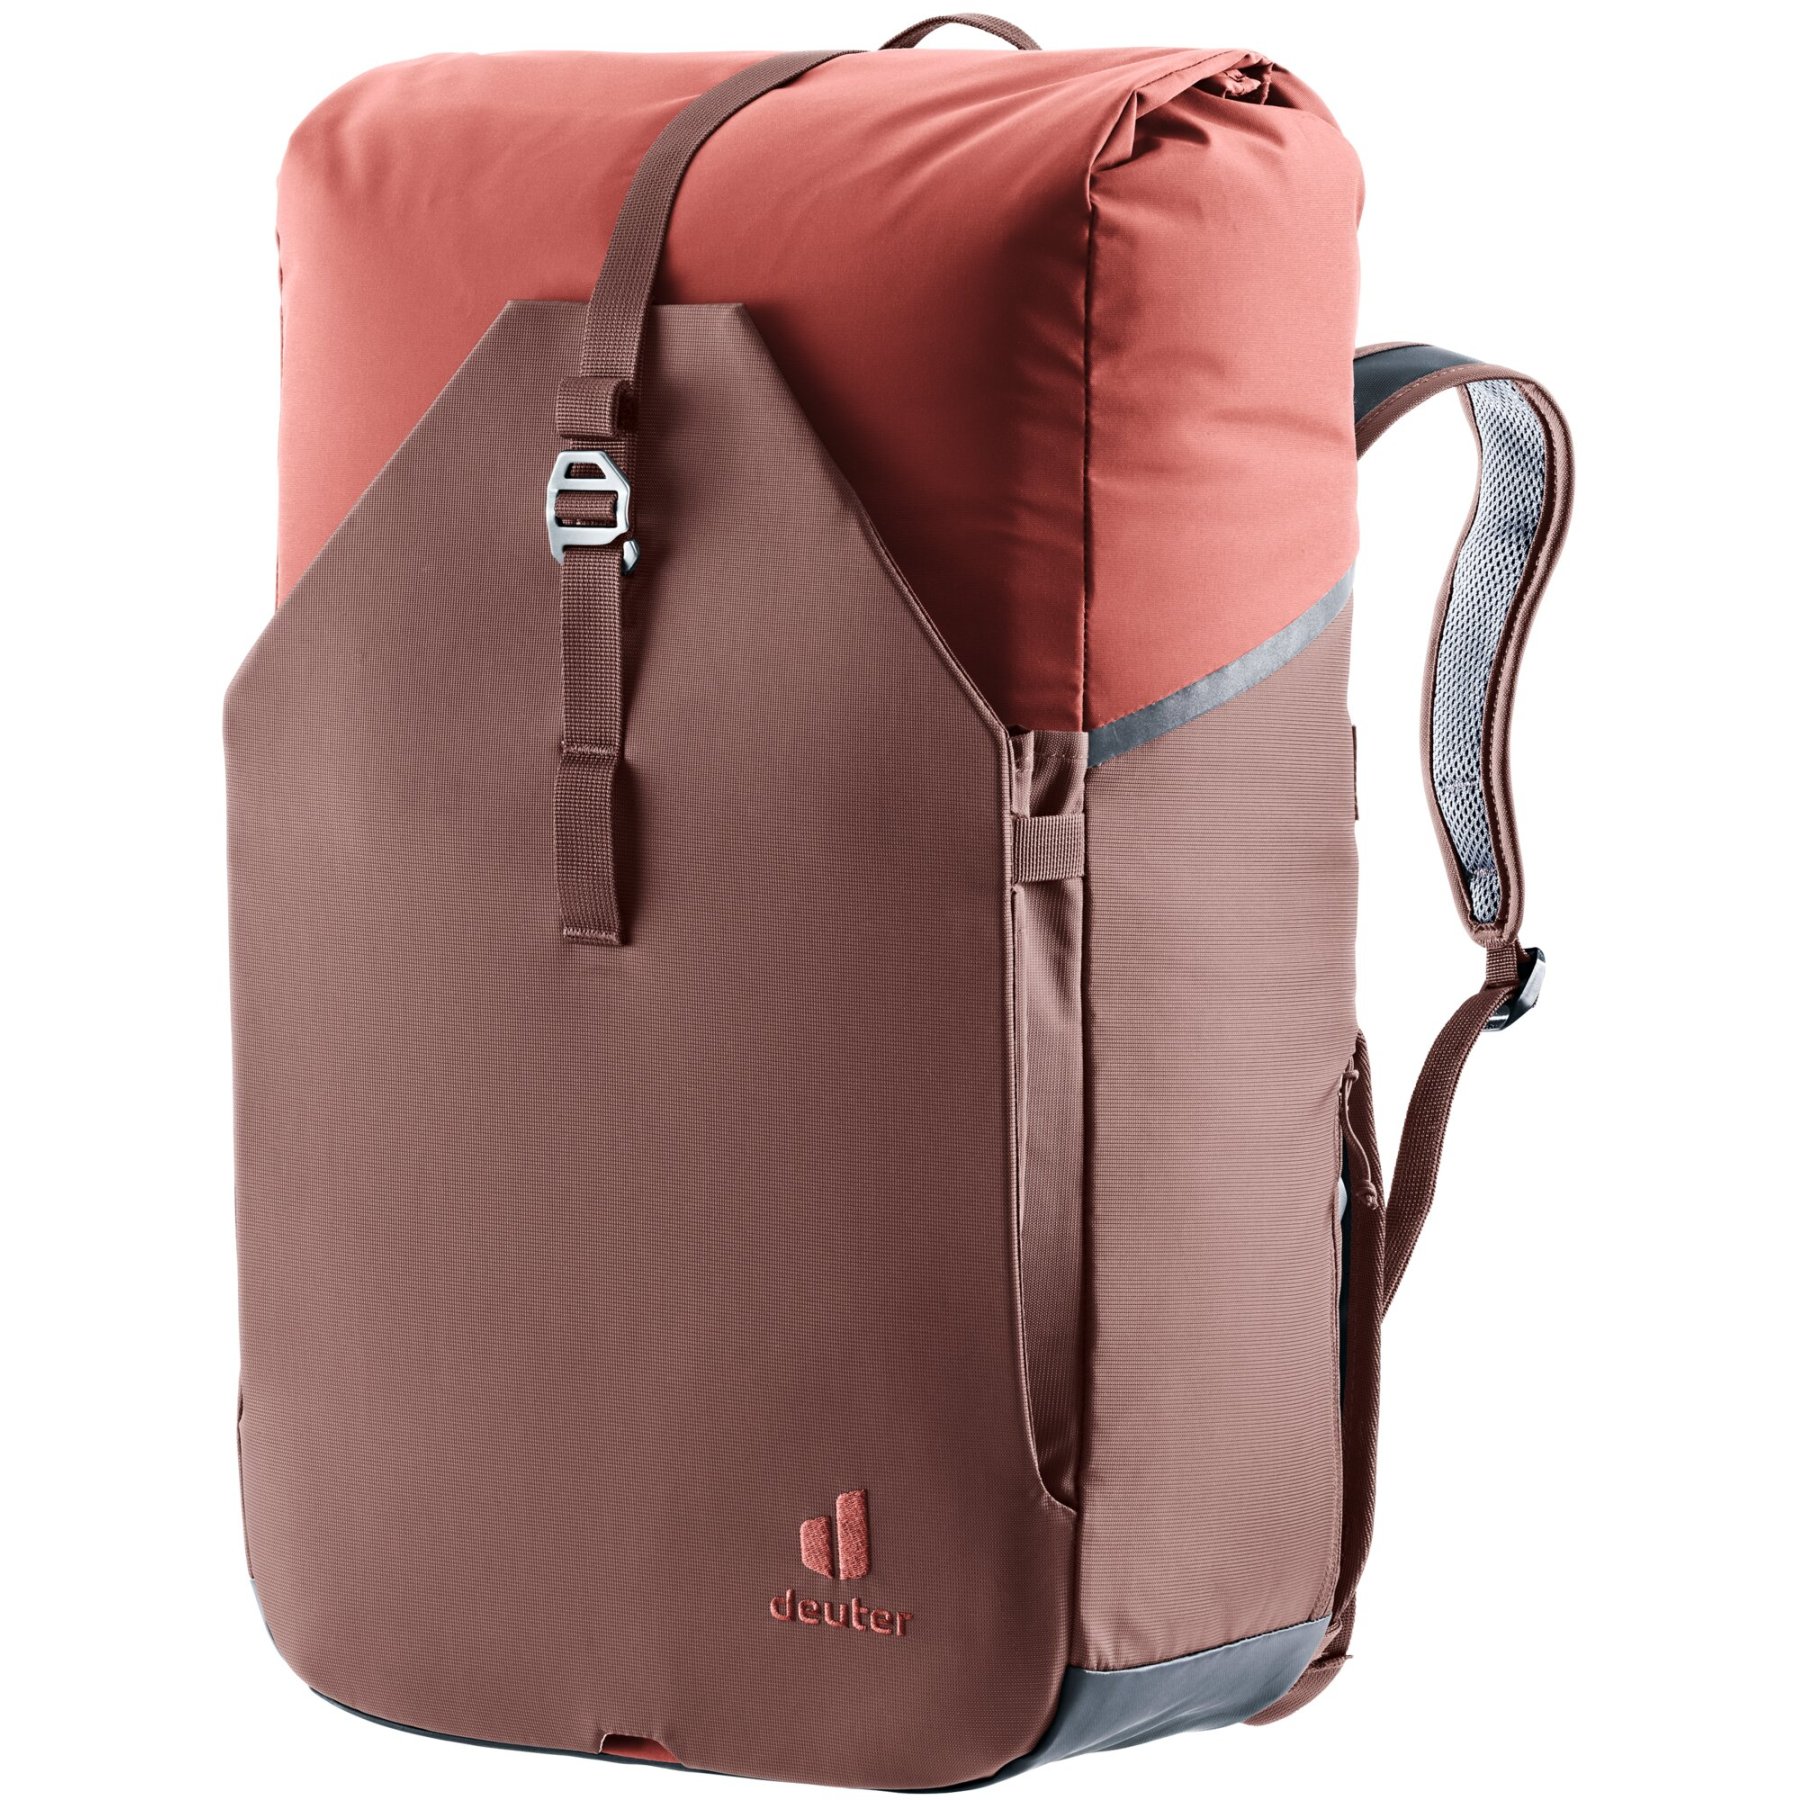 Produktbild von Deuter Xberg 25 Gepäckträgertasche mit Rucksackfunktion - raisin-caspia